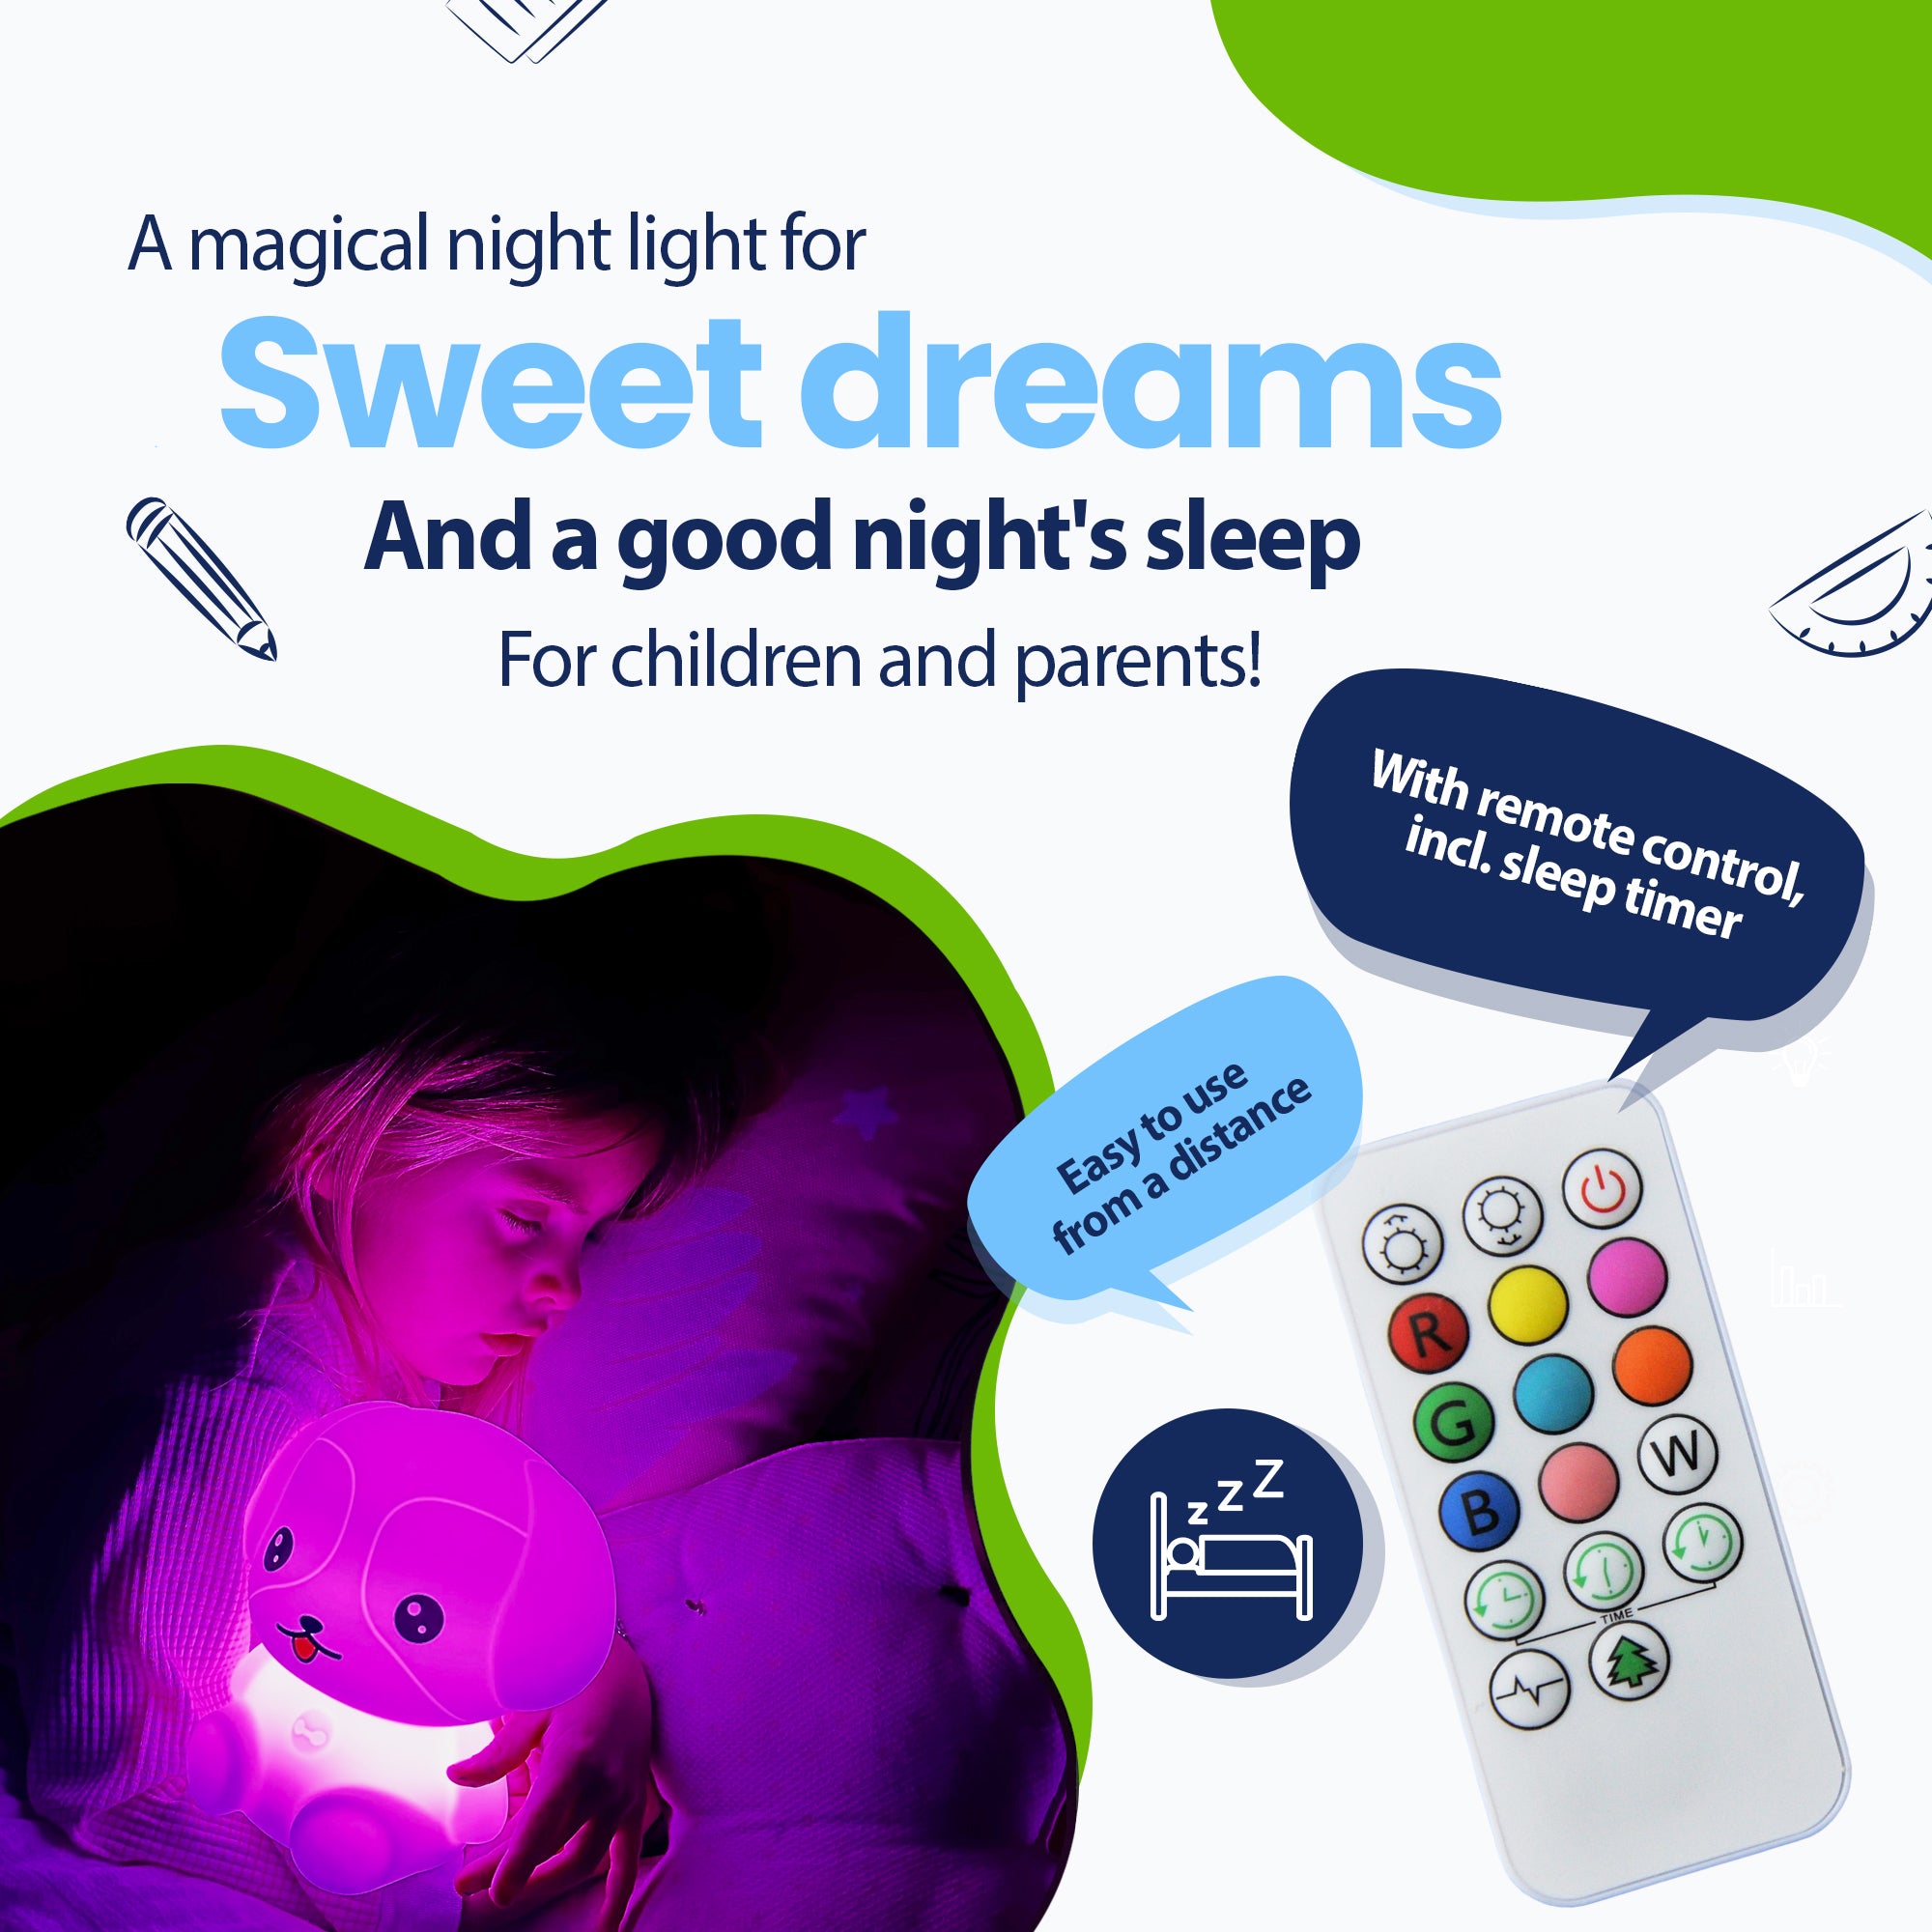 En magisk nattlampa för söta drömmar och en hälsosam nattsömn för barn och föräldrar - med fjärrkontroll inklusive insomningstimer - enkelt på avstånd